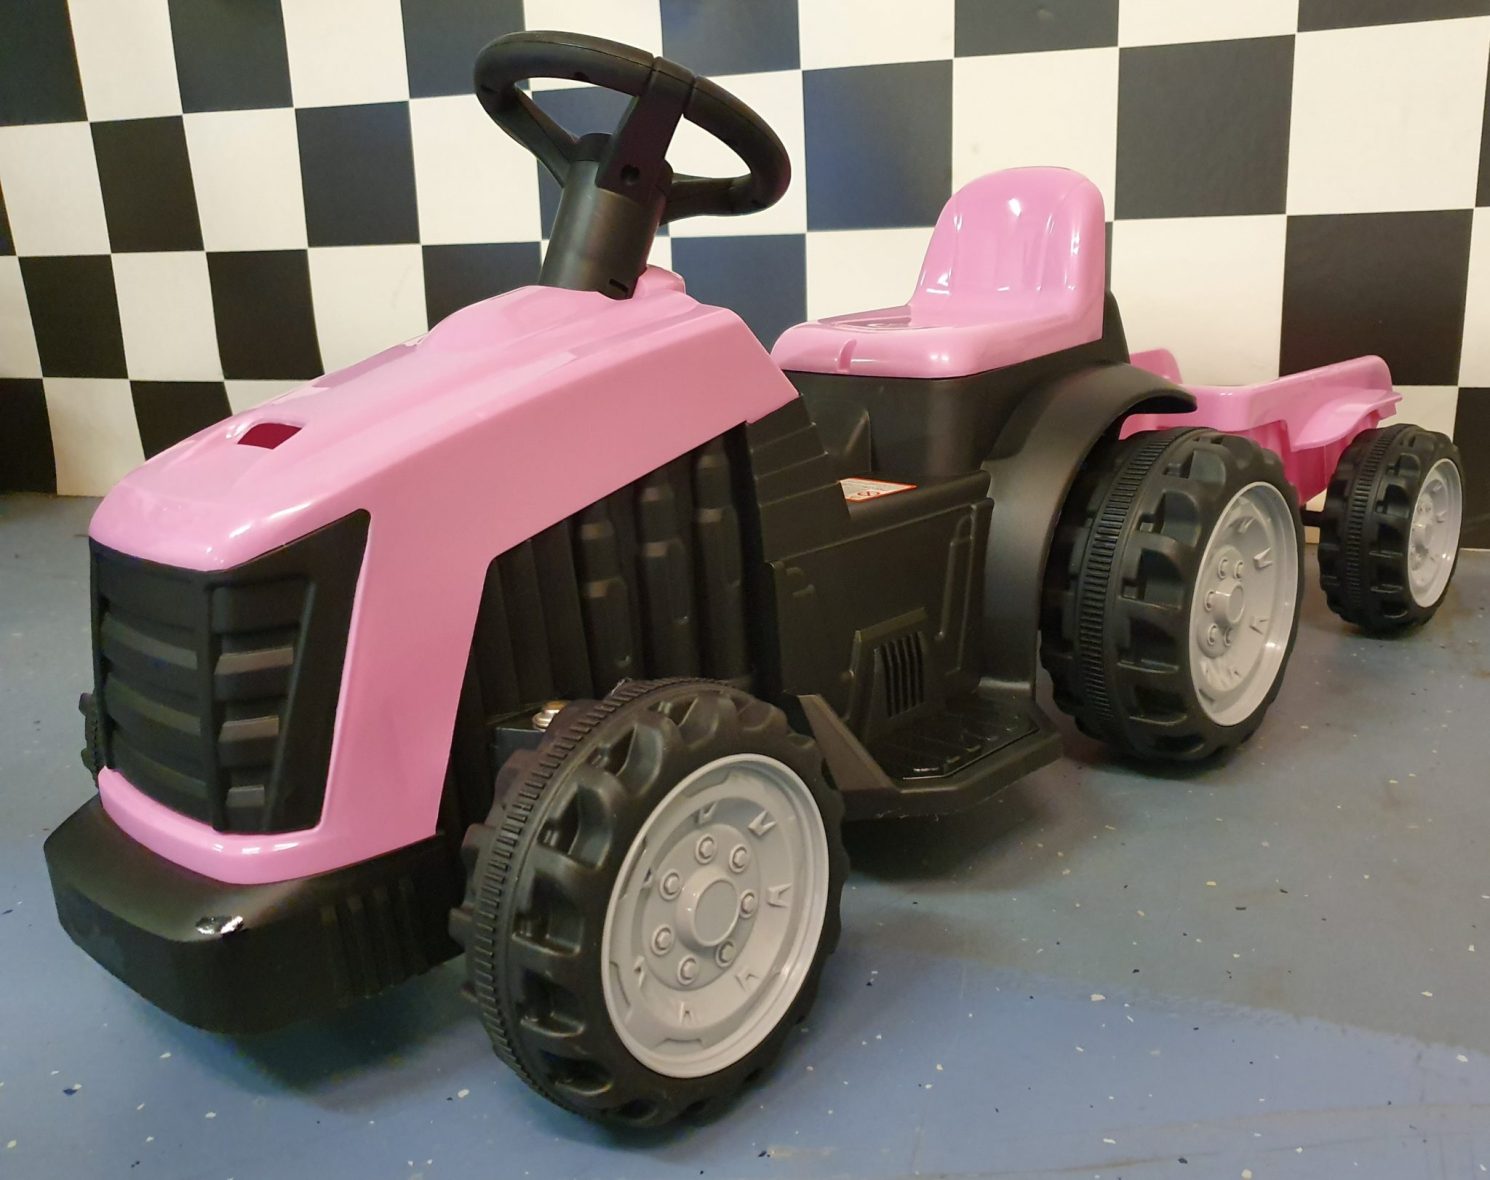 kinder-tractor-elektrisch